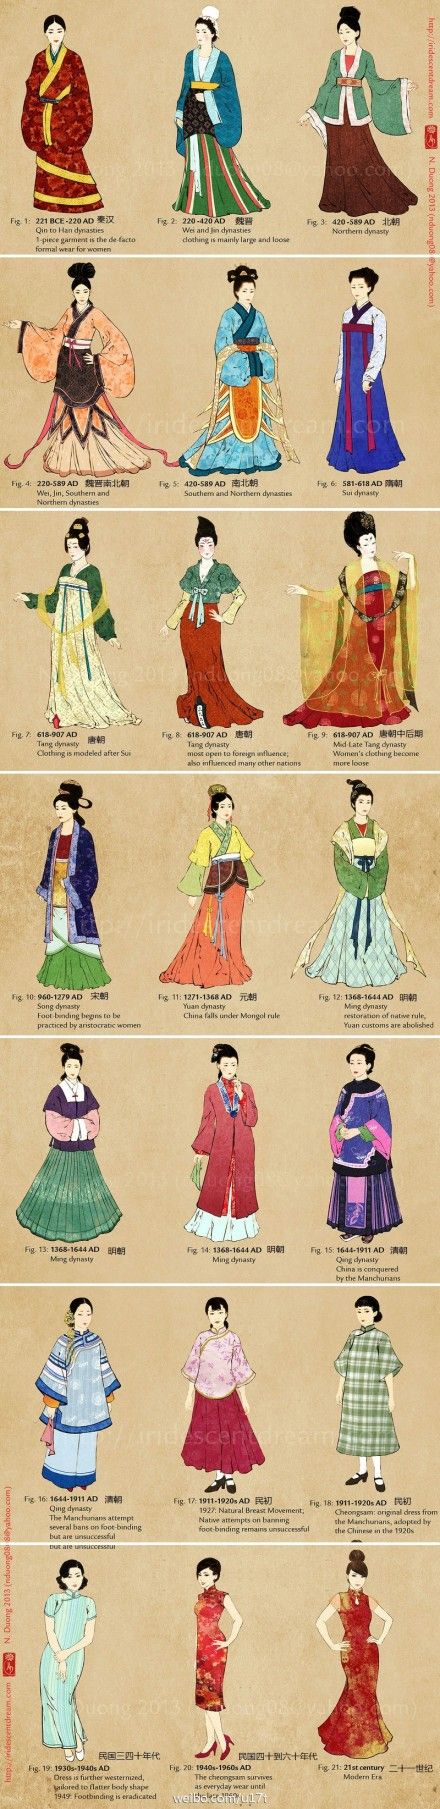 古代女子衣着打扮描写图片